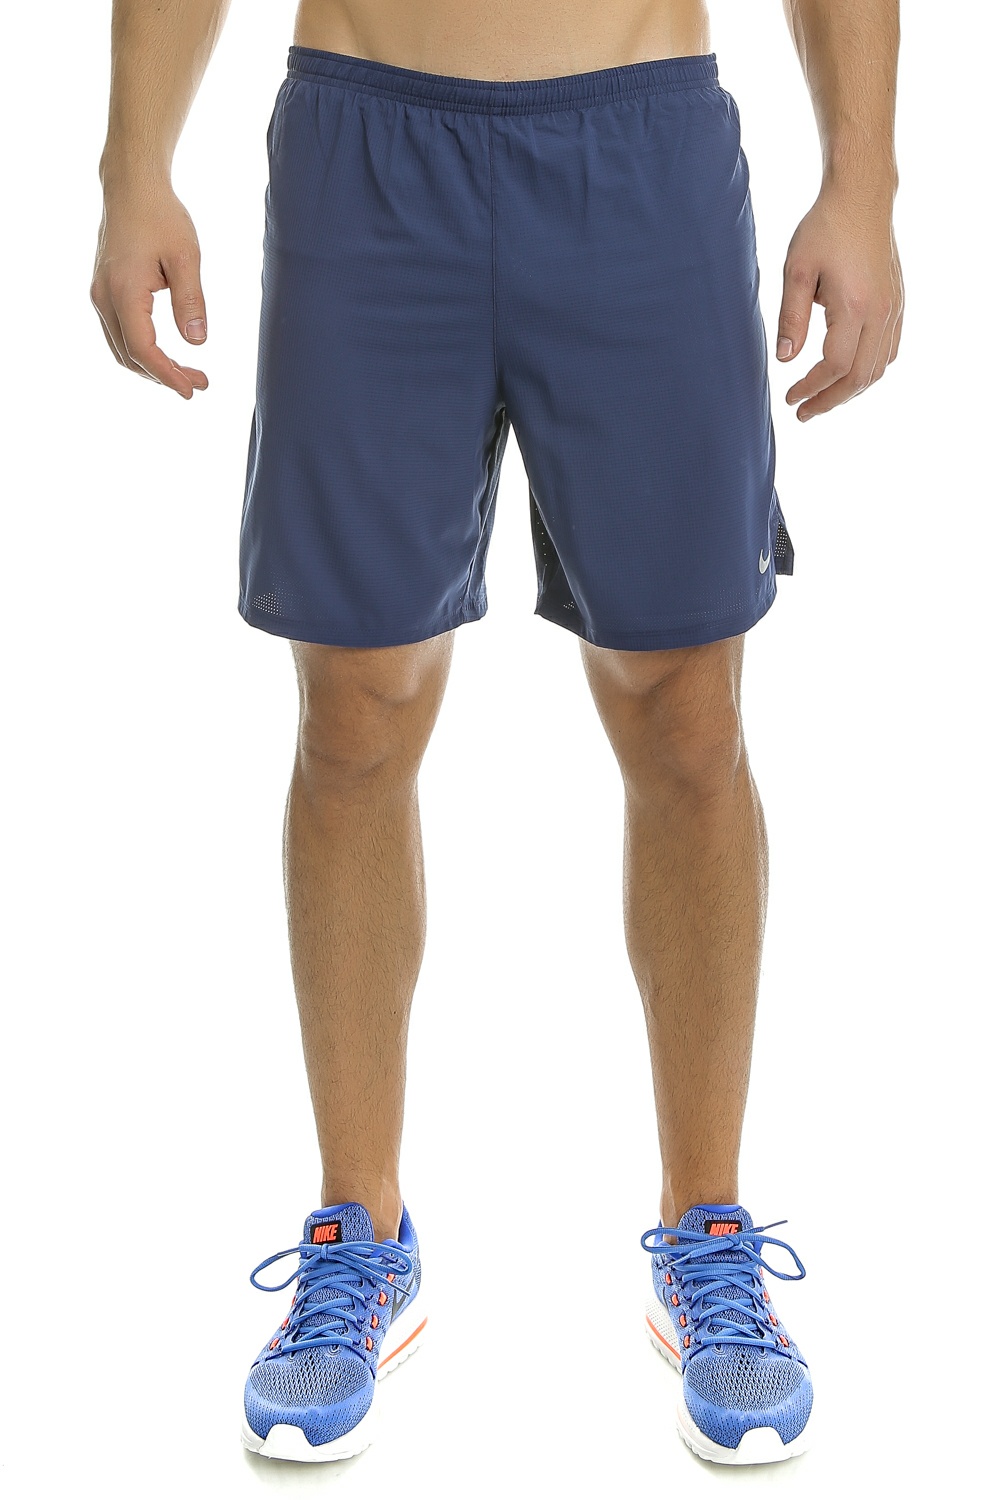 Ανδρικά/Ρούχα/Σορτς-Βερμούδες/Αθλητικά NIKE - Ανδρικό αθλητικό σορτς Nike 7" PHENOM 2-IN-1 μπλε